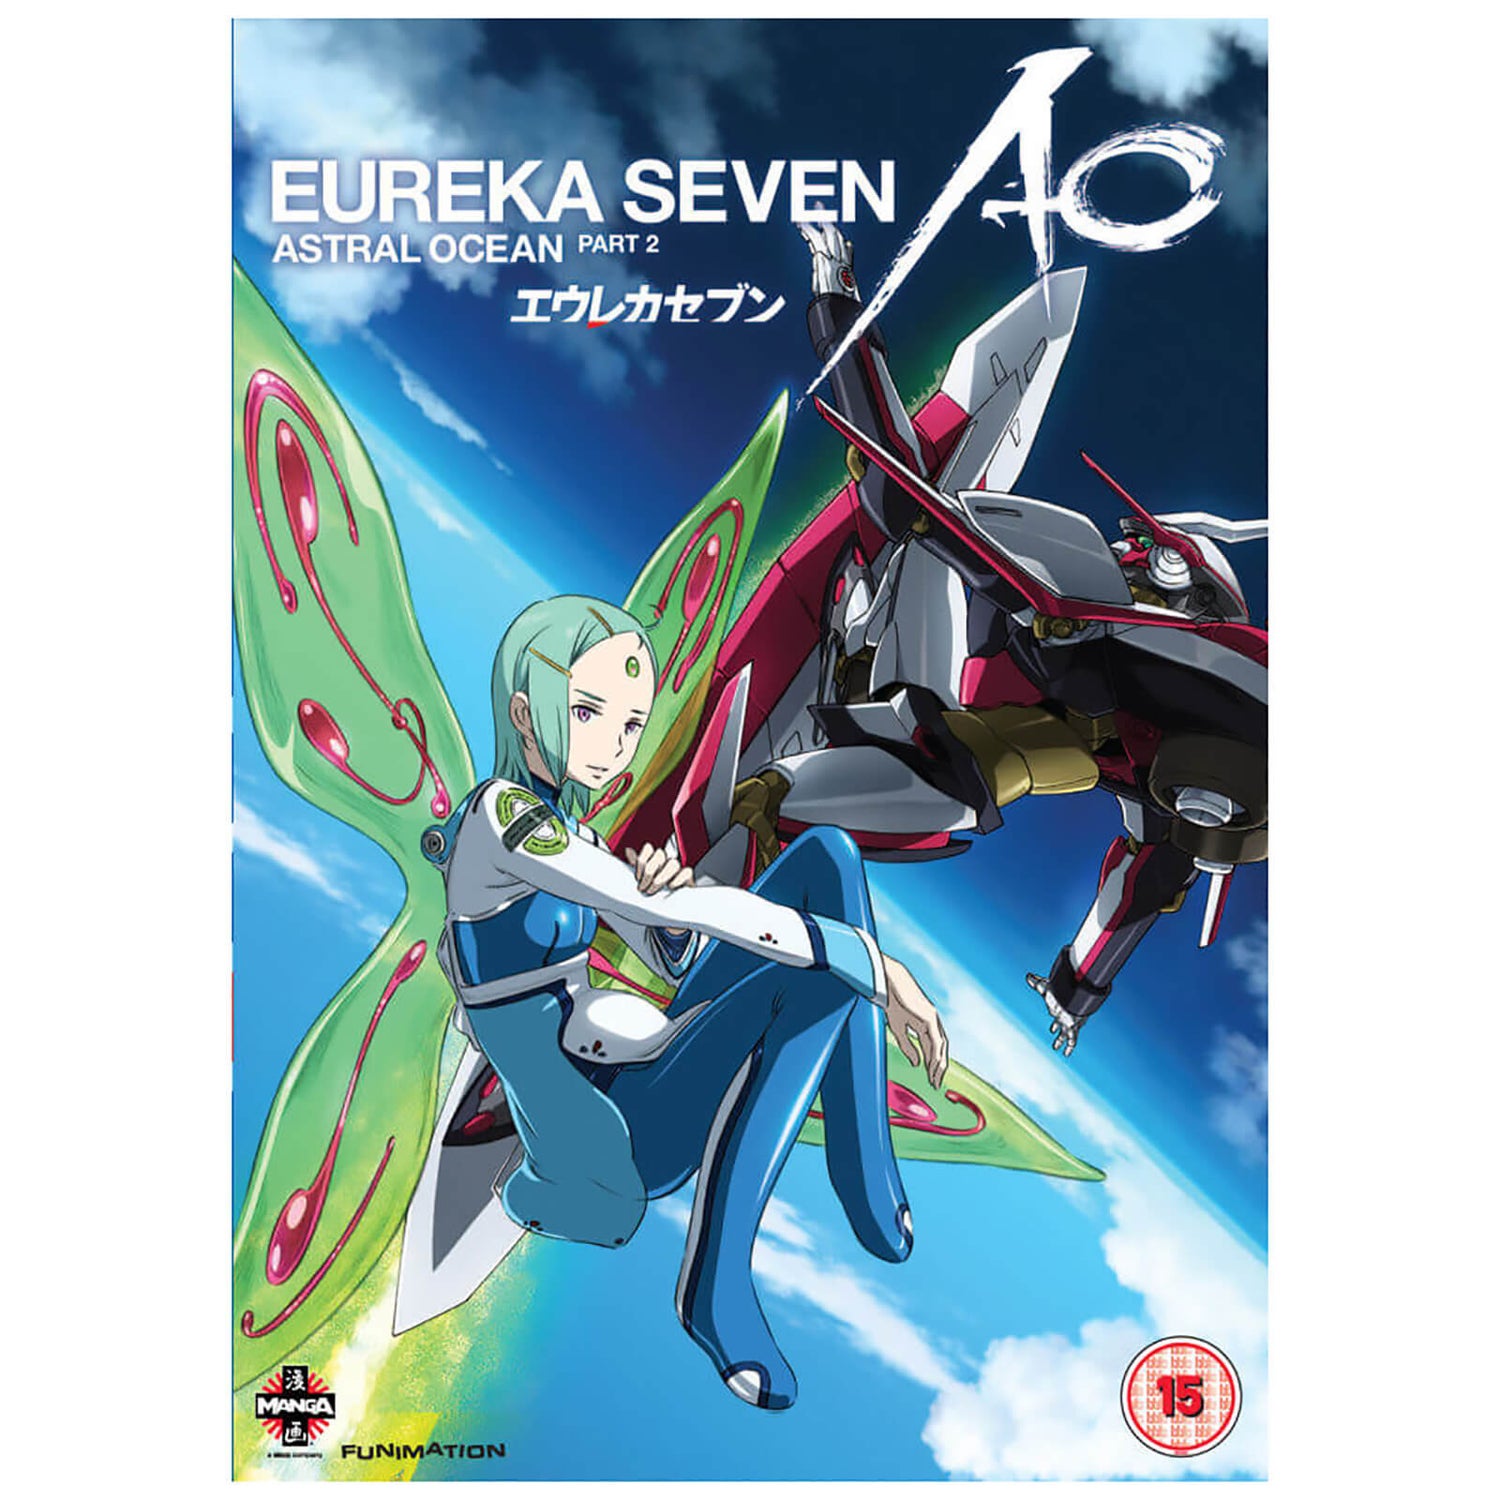 Eureka Seven AO (Astral Ocean) - Part 2: Episodes 12-24